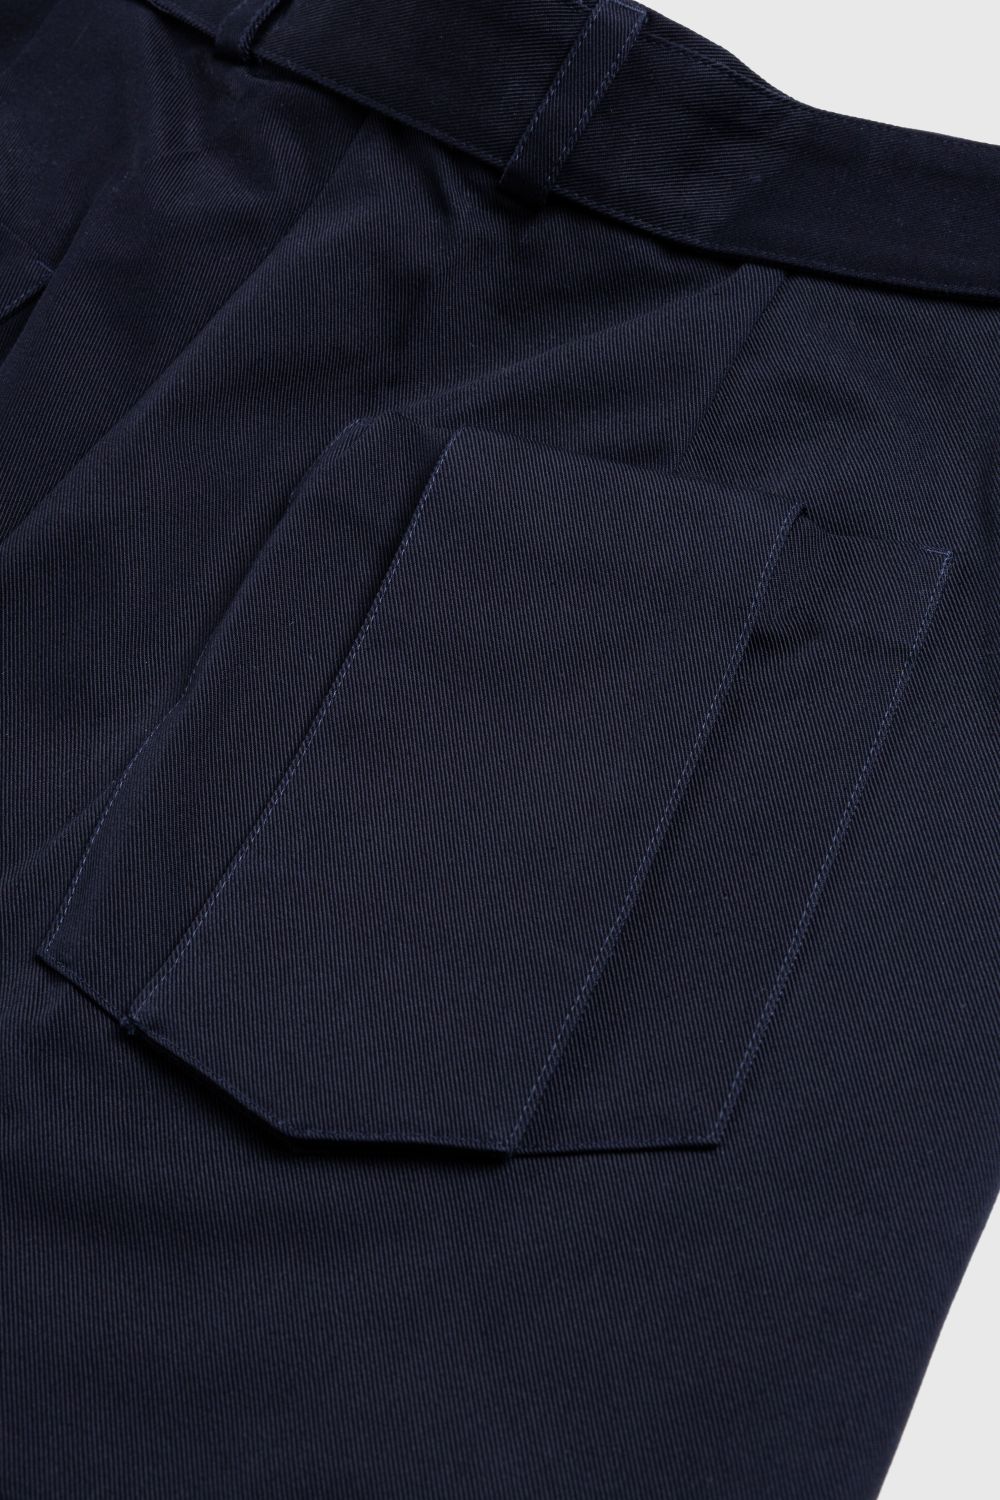 Jil Sander – Belted Shorts Navy - Shorts - Blue - Image 4